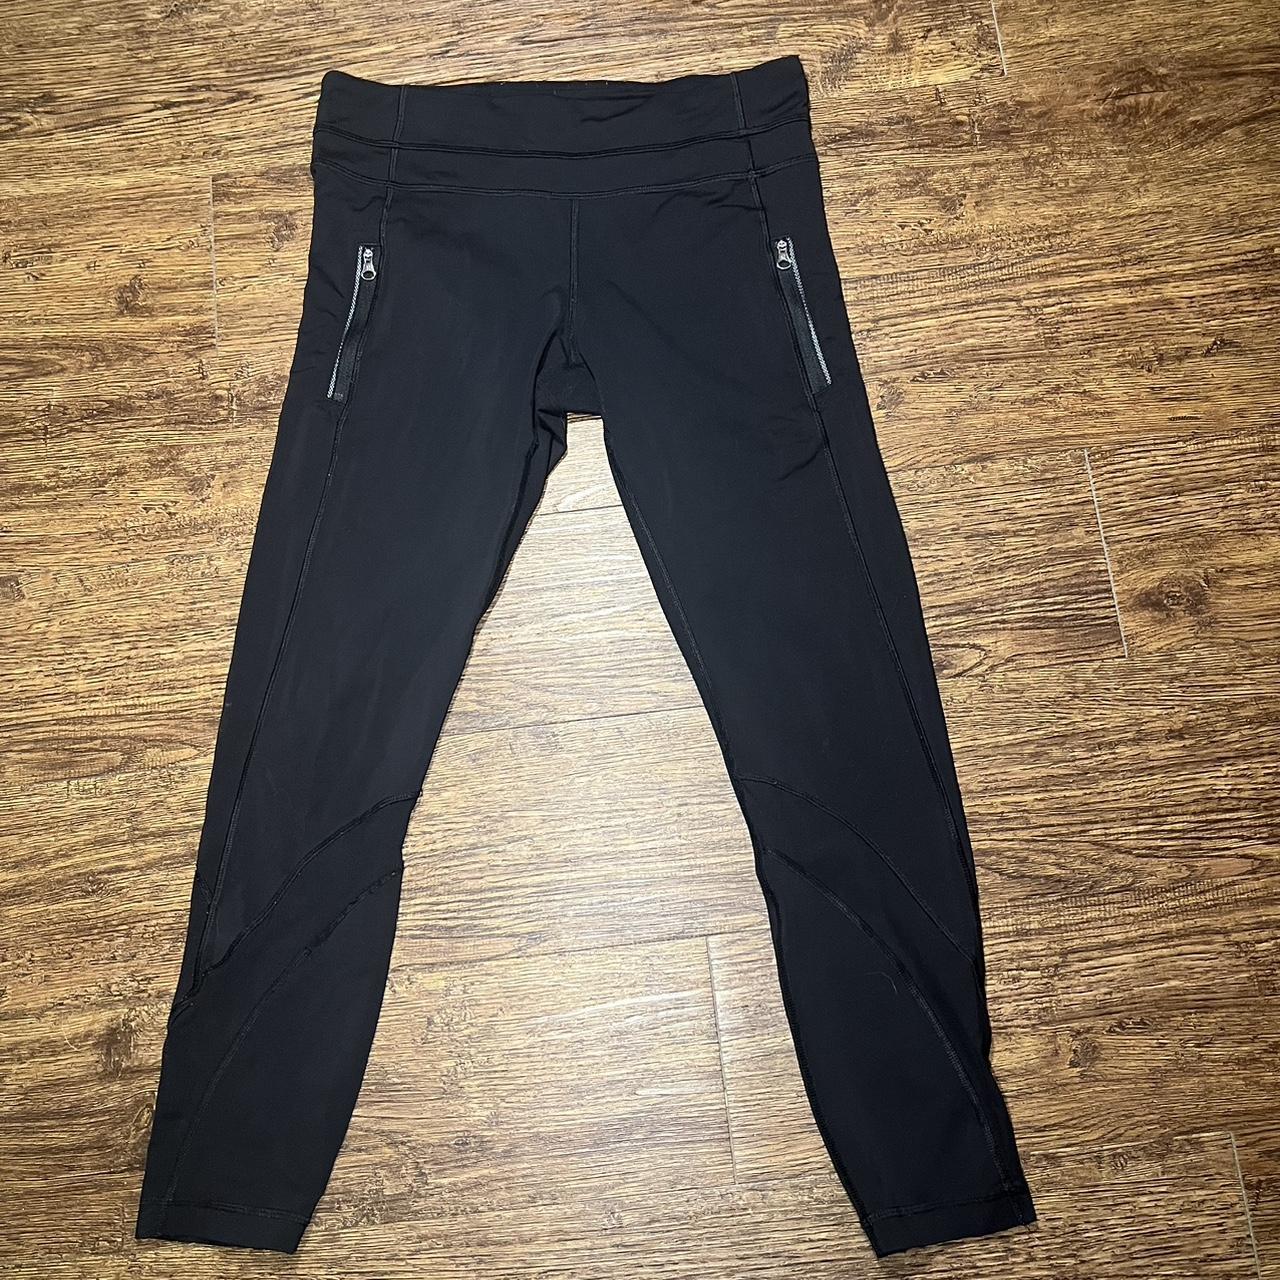 Lululemon leggings! Size 8 full length black with - Depop